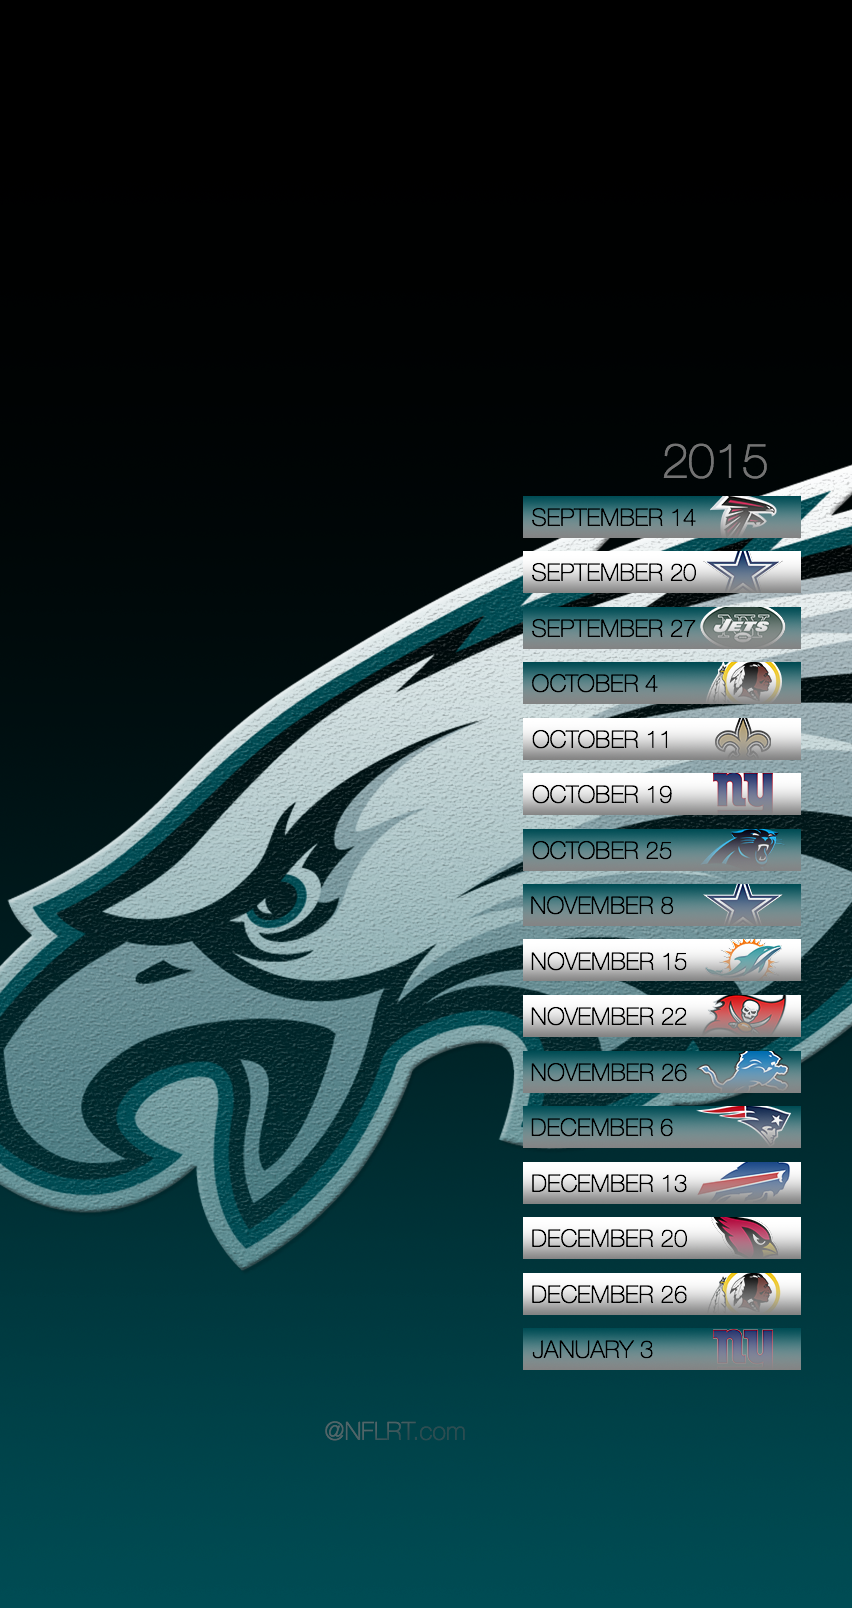 [50+] 2015 NFL Schedule Wallpaper on WallpaperSafari